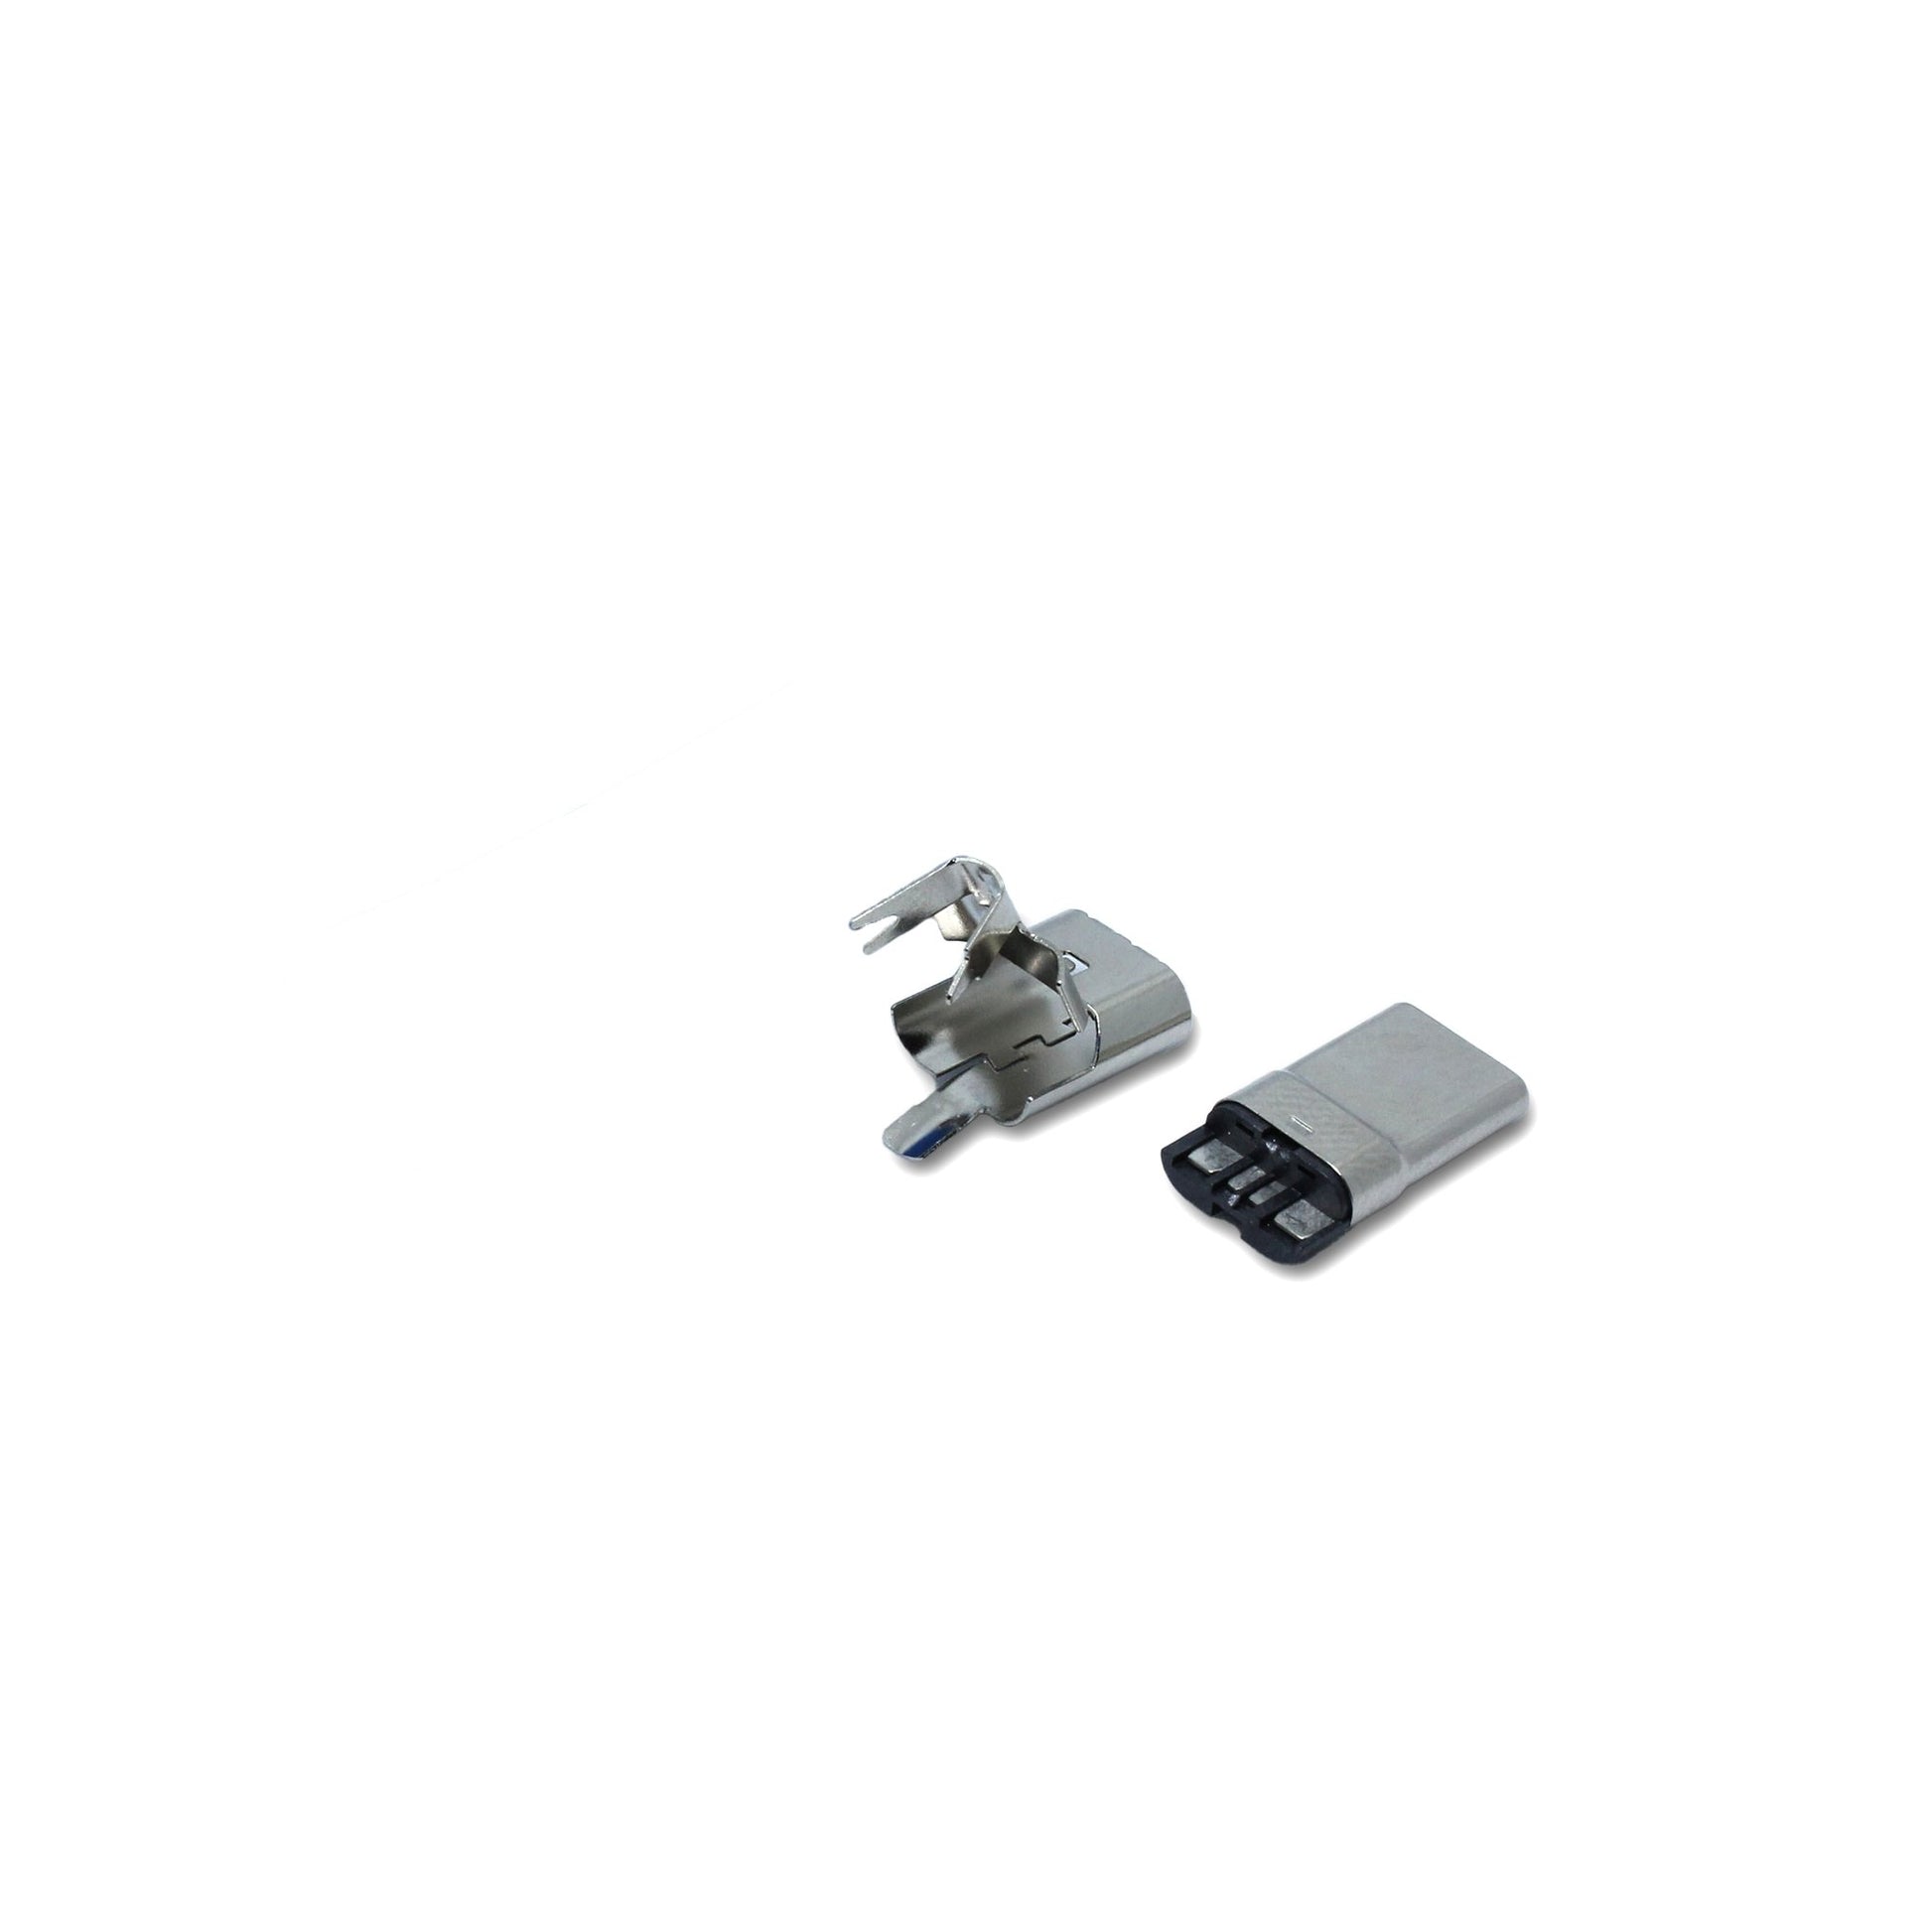 Metallteile für den USB C Anschluss